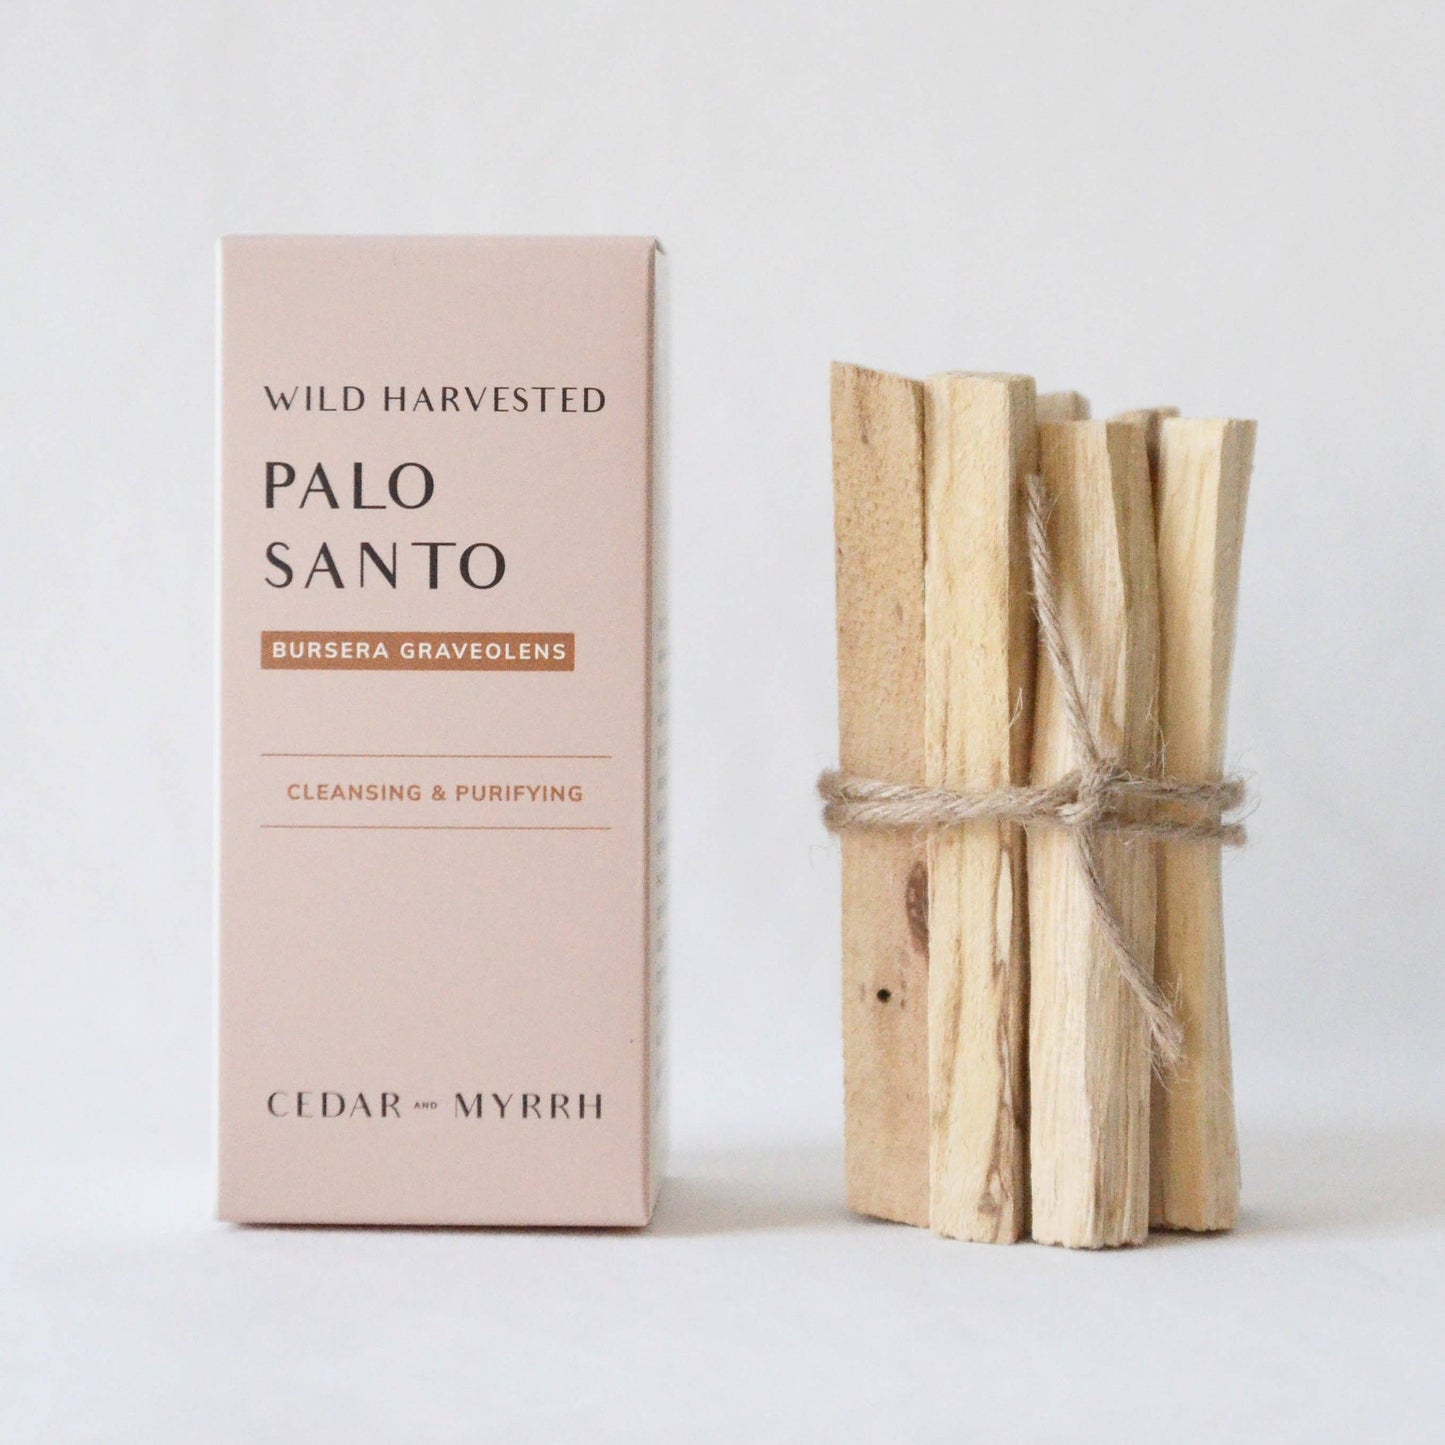 Palo Santo Sticks From Ecuador: Cedar and Myrrh